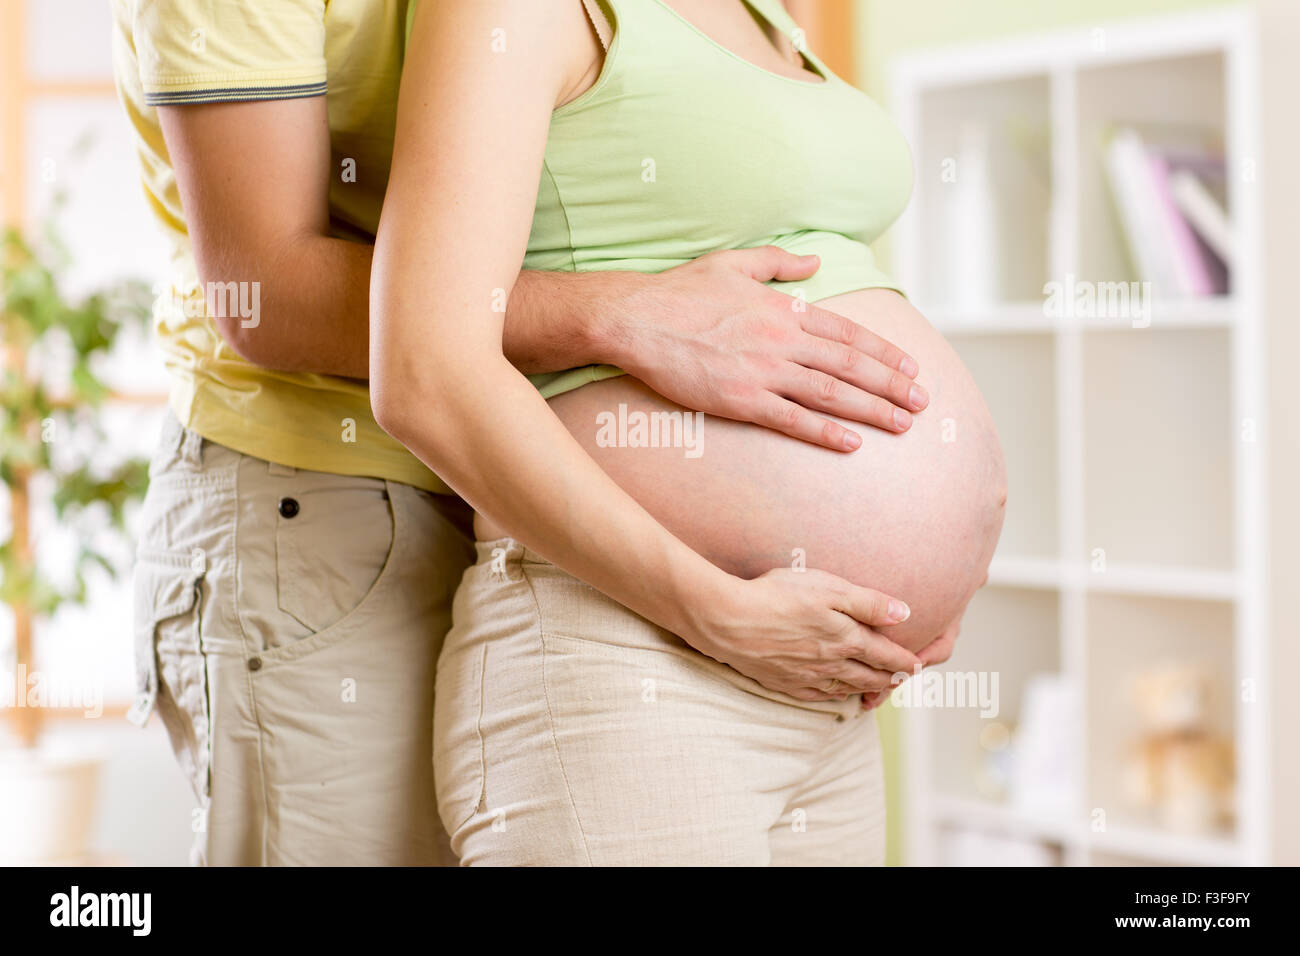 Mama Y Papa Con Las Manos De Bebe Fotografia De Stock Alamy